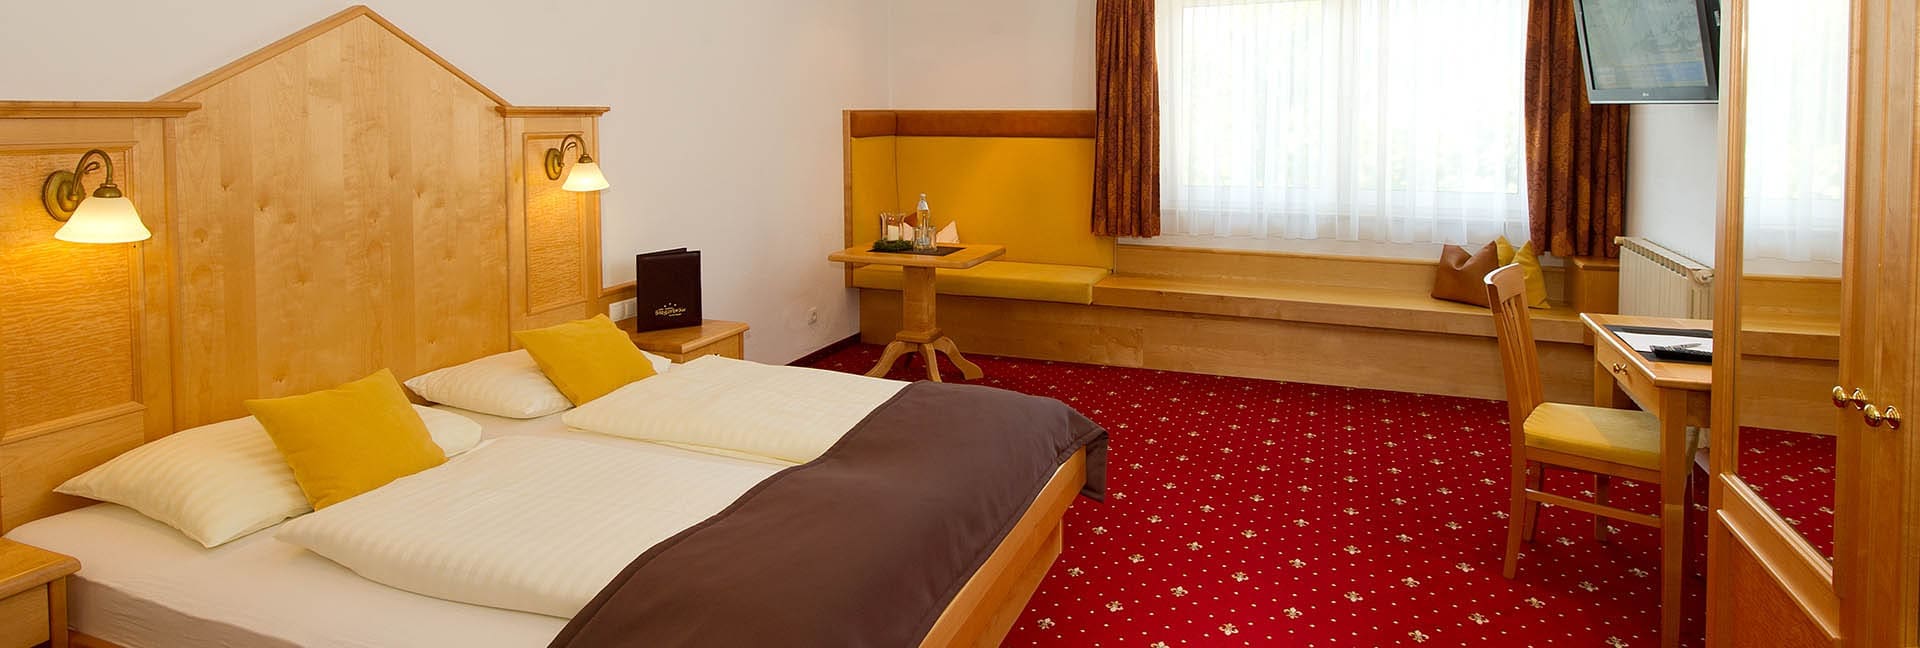 Zimmer - Hotel in Radstadt - Stegerbräu